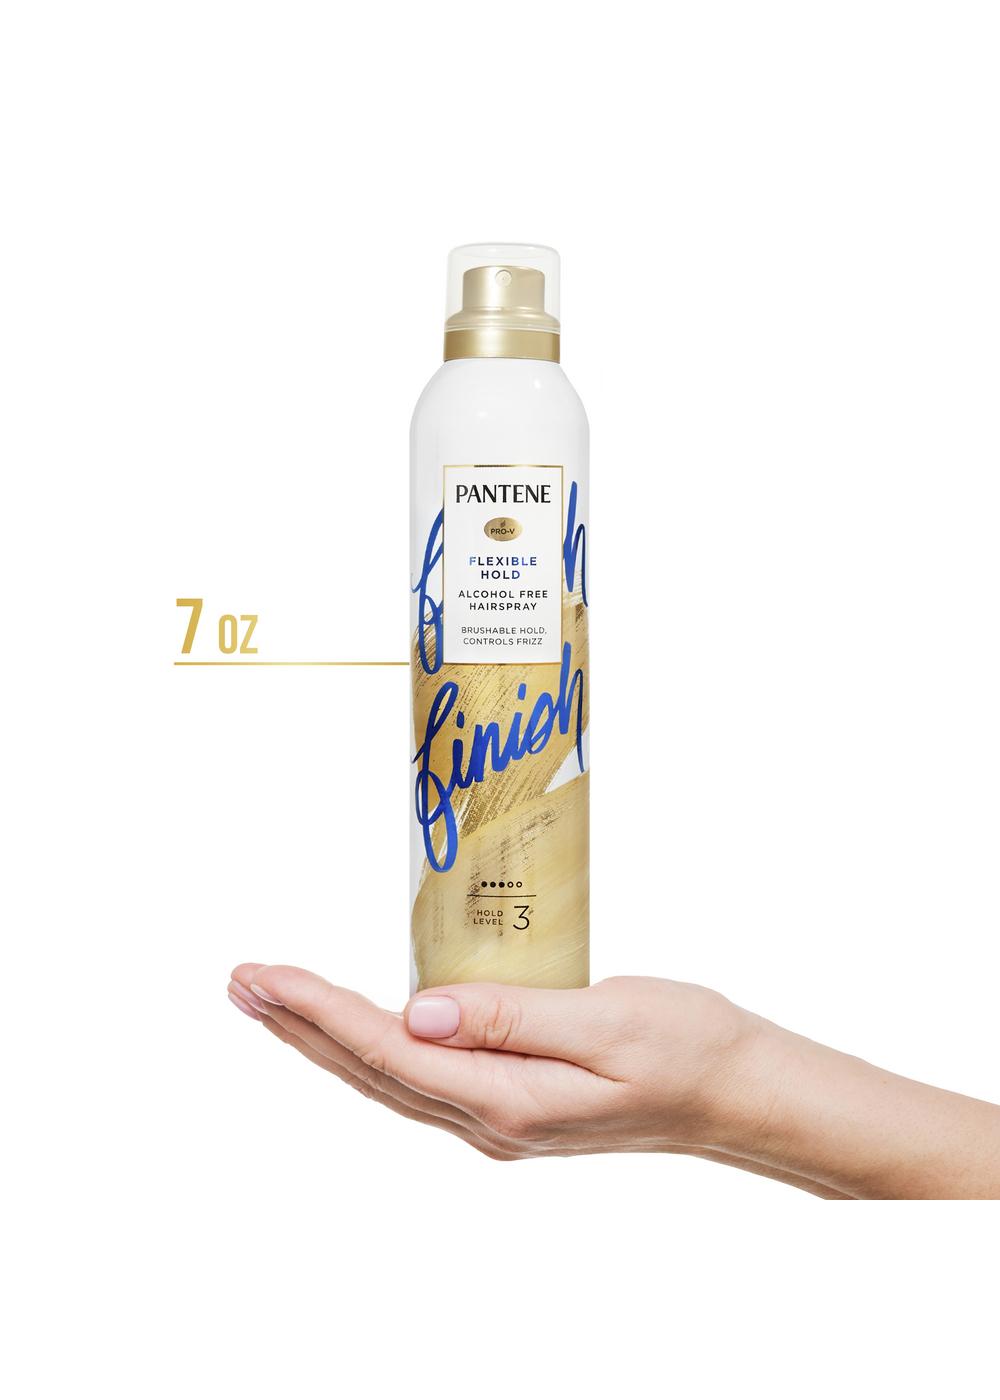 Pantene Pro-V Flexible Hold Alcohol Free Hairspray; image 6 of 8